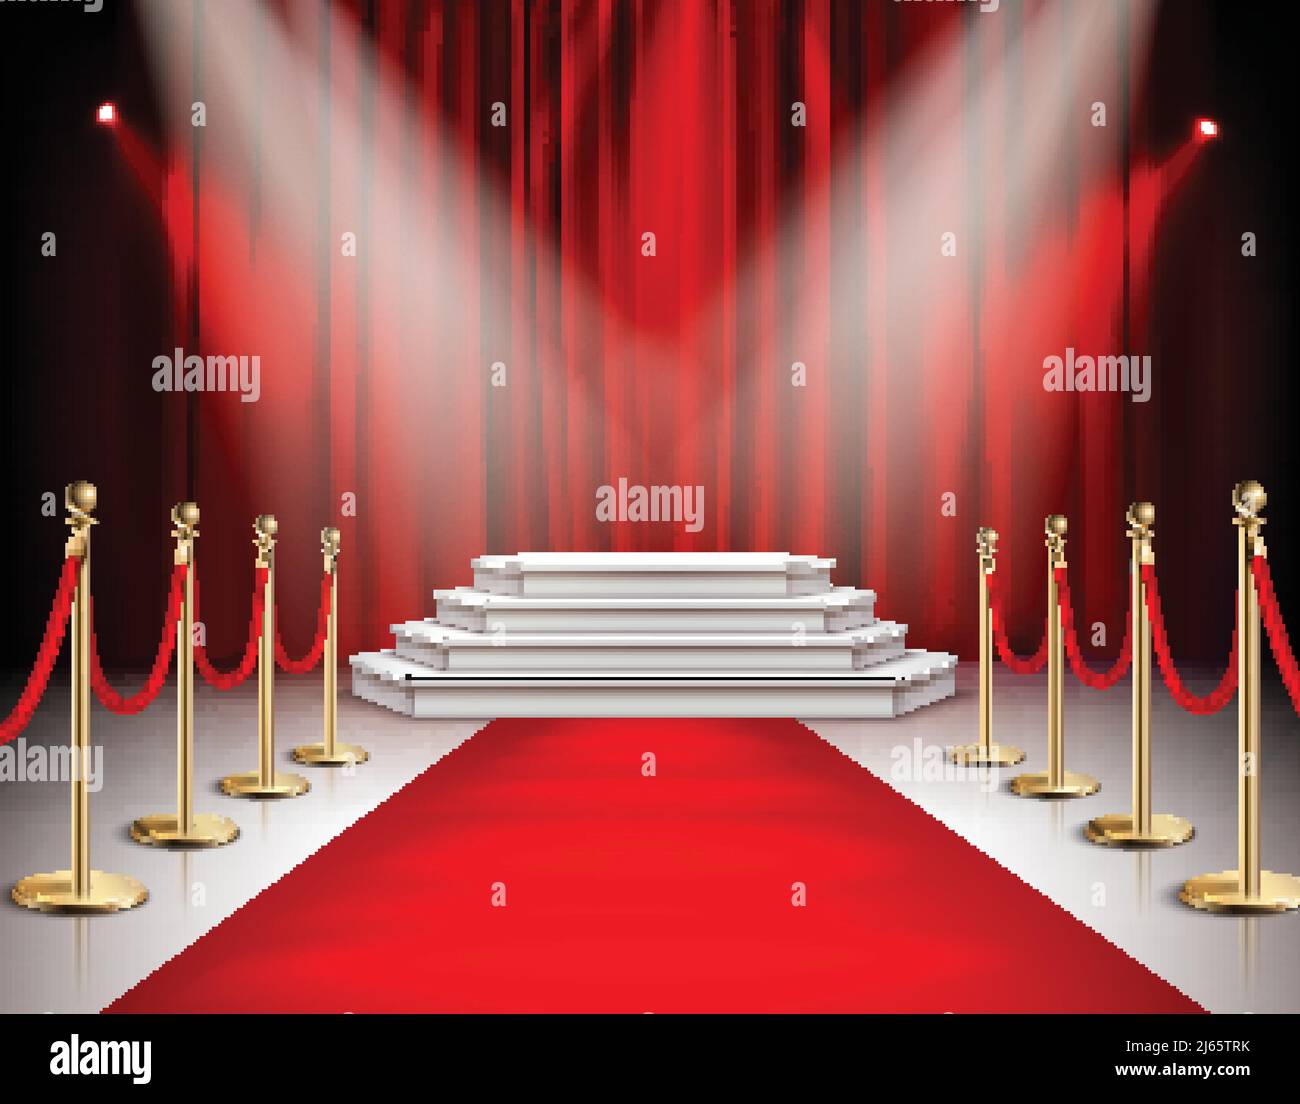 Red carpet celebrities evento composizione realistica con scala bianca podio faretti carminio satinato tenda sfondo illustrazione vettoriale Illustrazione Vettoriale